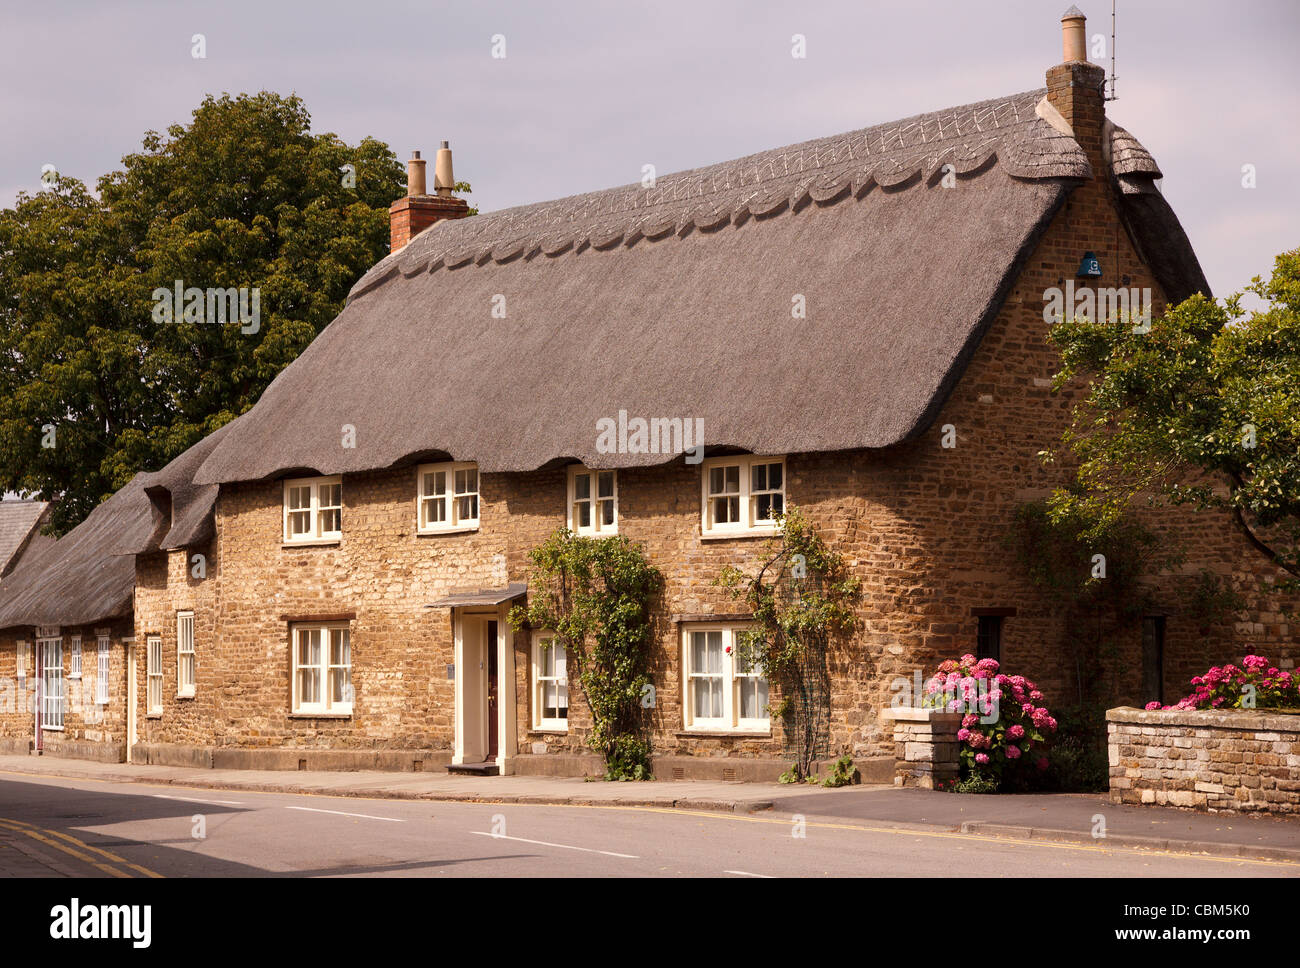 The Old Manor House English thatched stone cottage, Northgate Street, Oakham, Rutland, England, UK Stock Photo